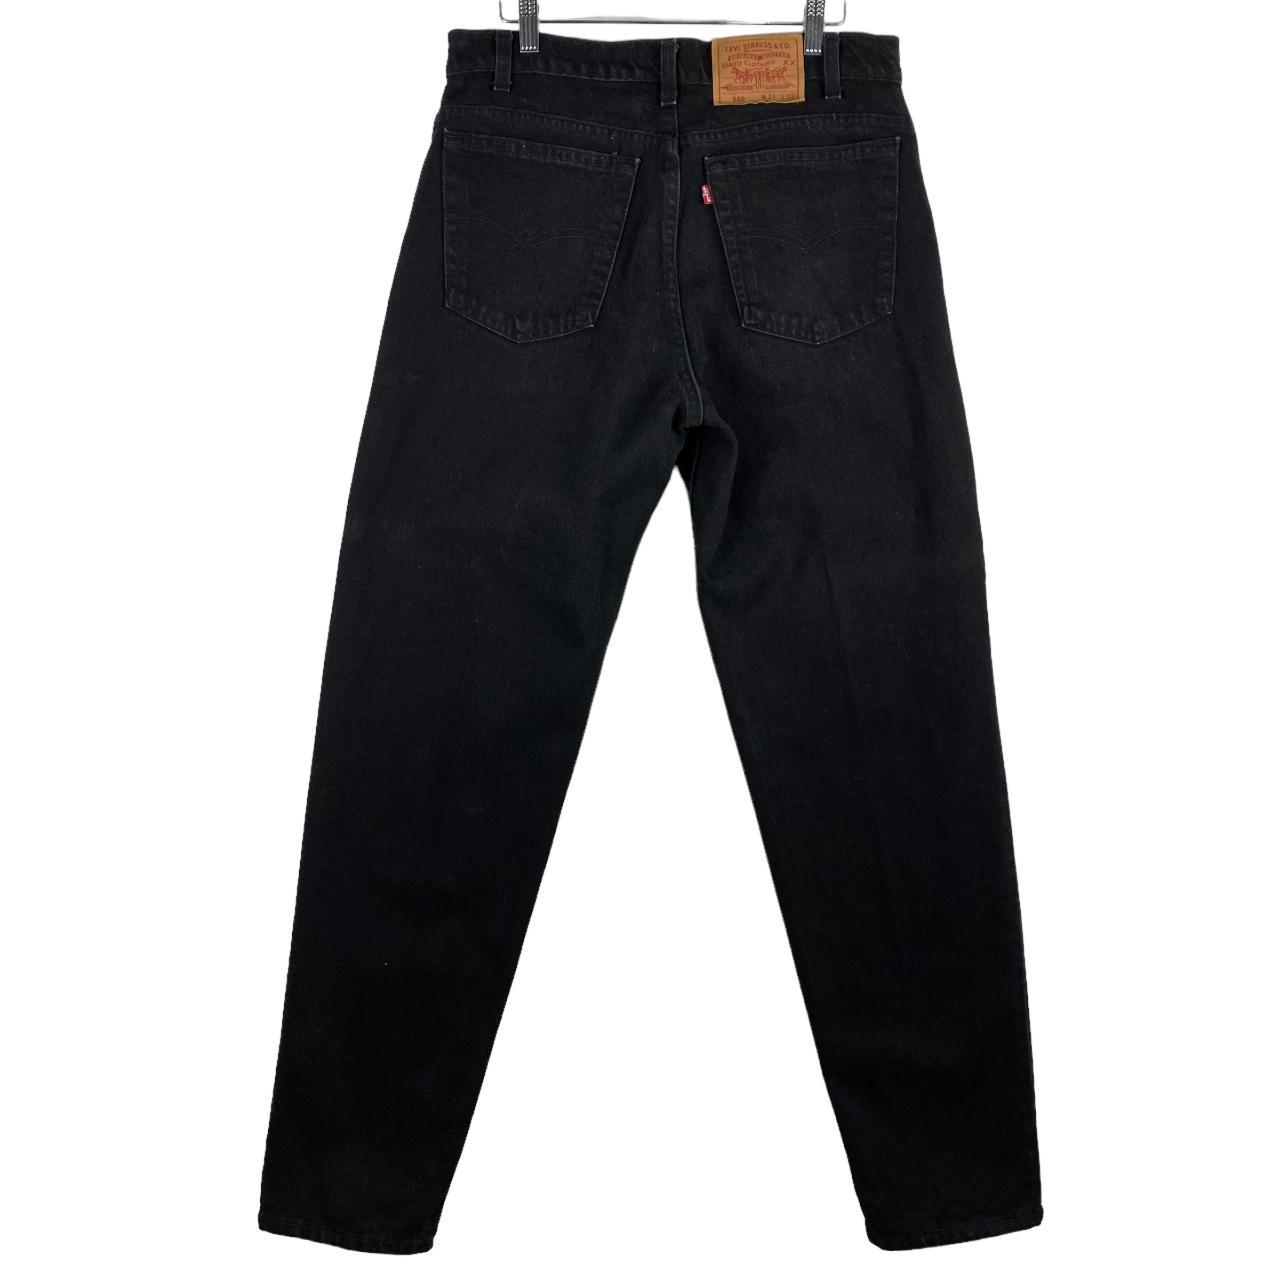 Vintage Levis 550 Jeans 80's Black USA Made Tapered... - Depop